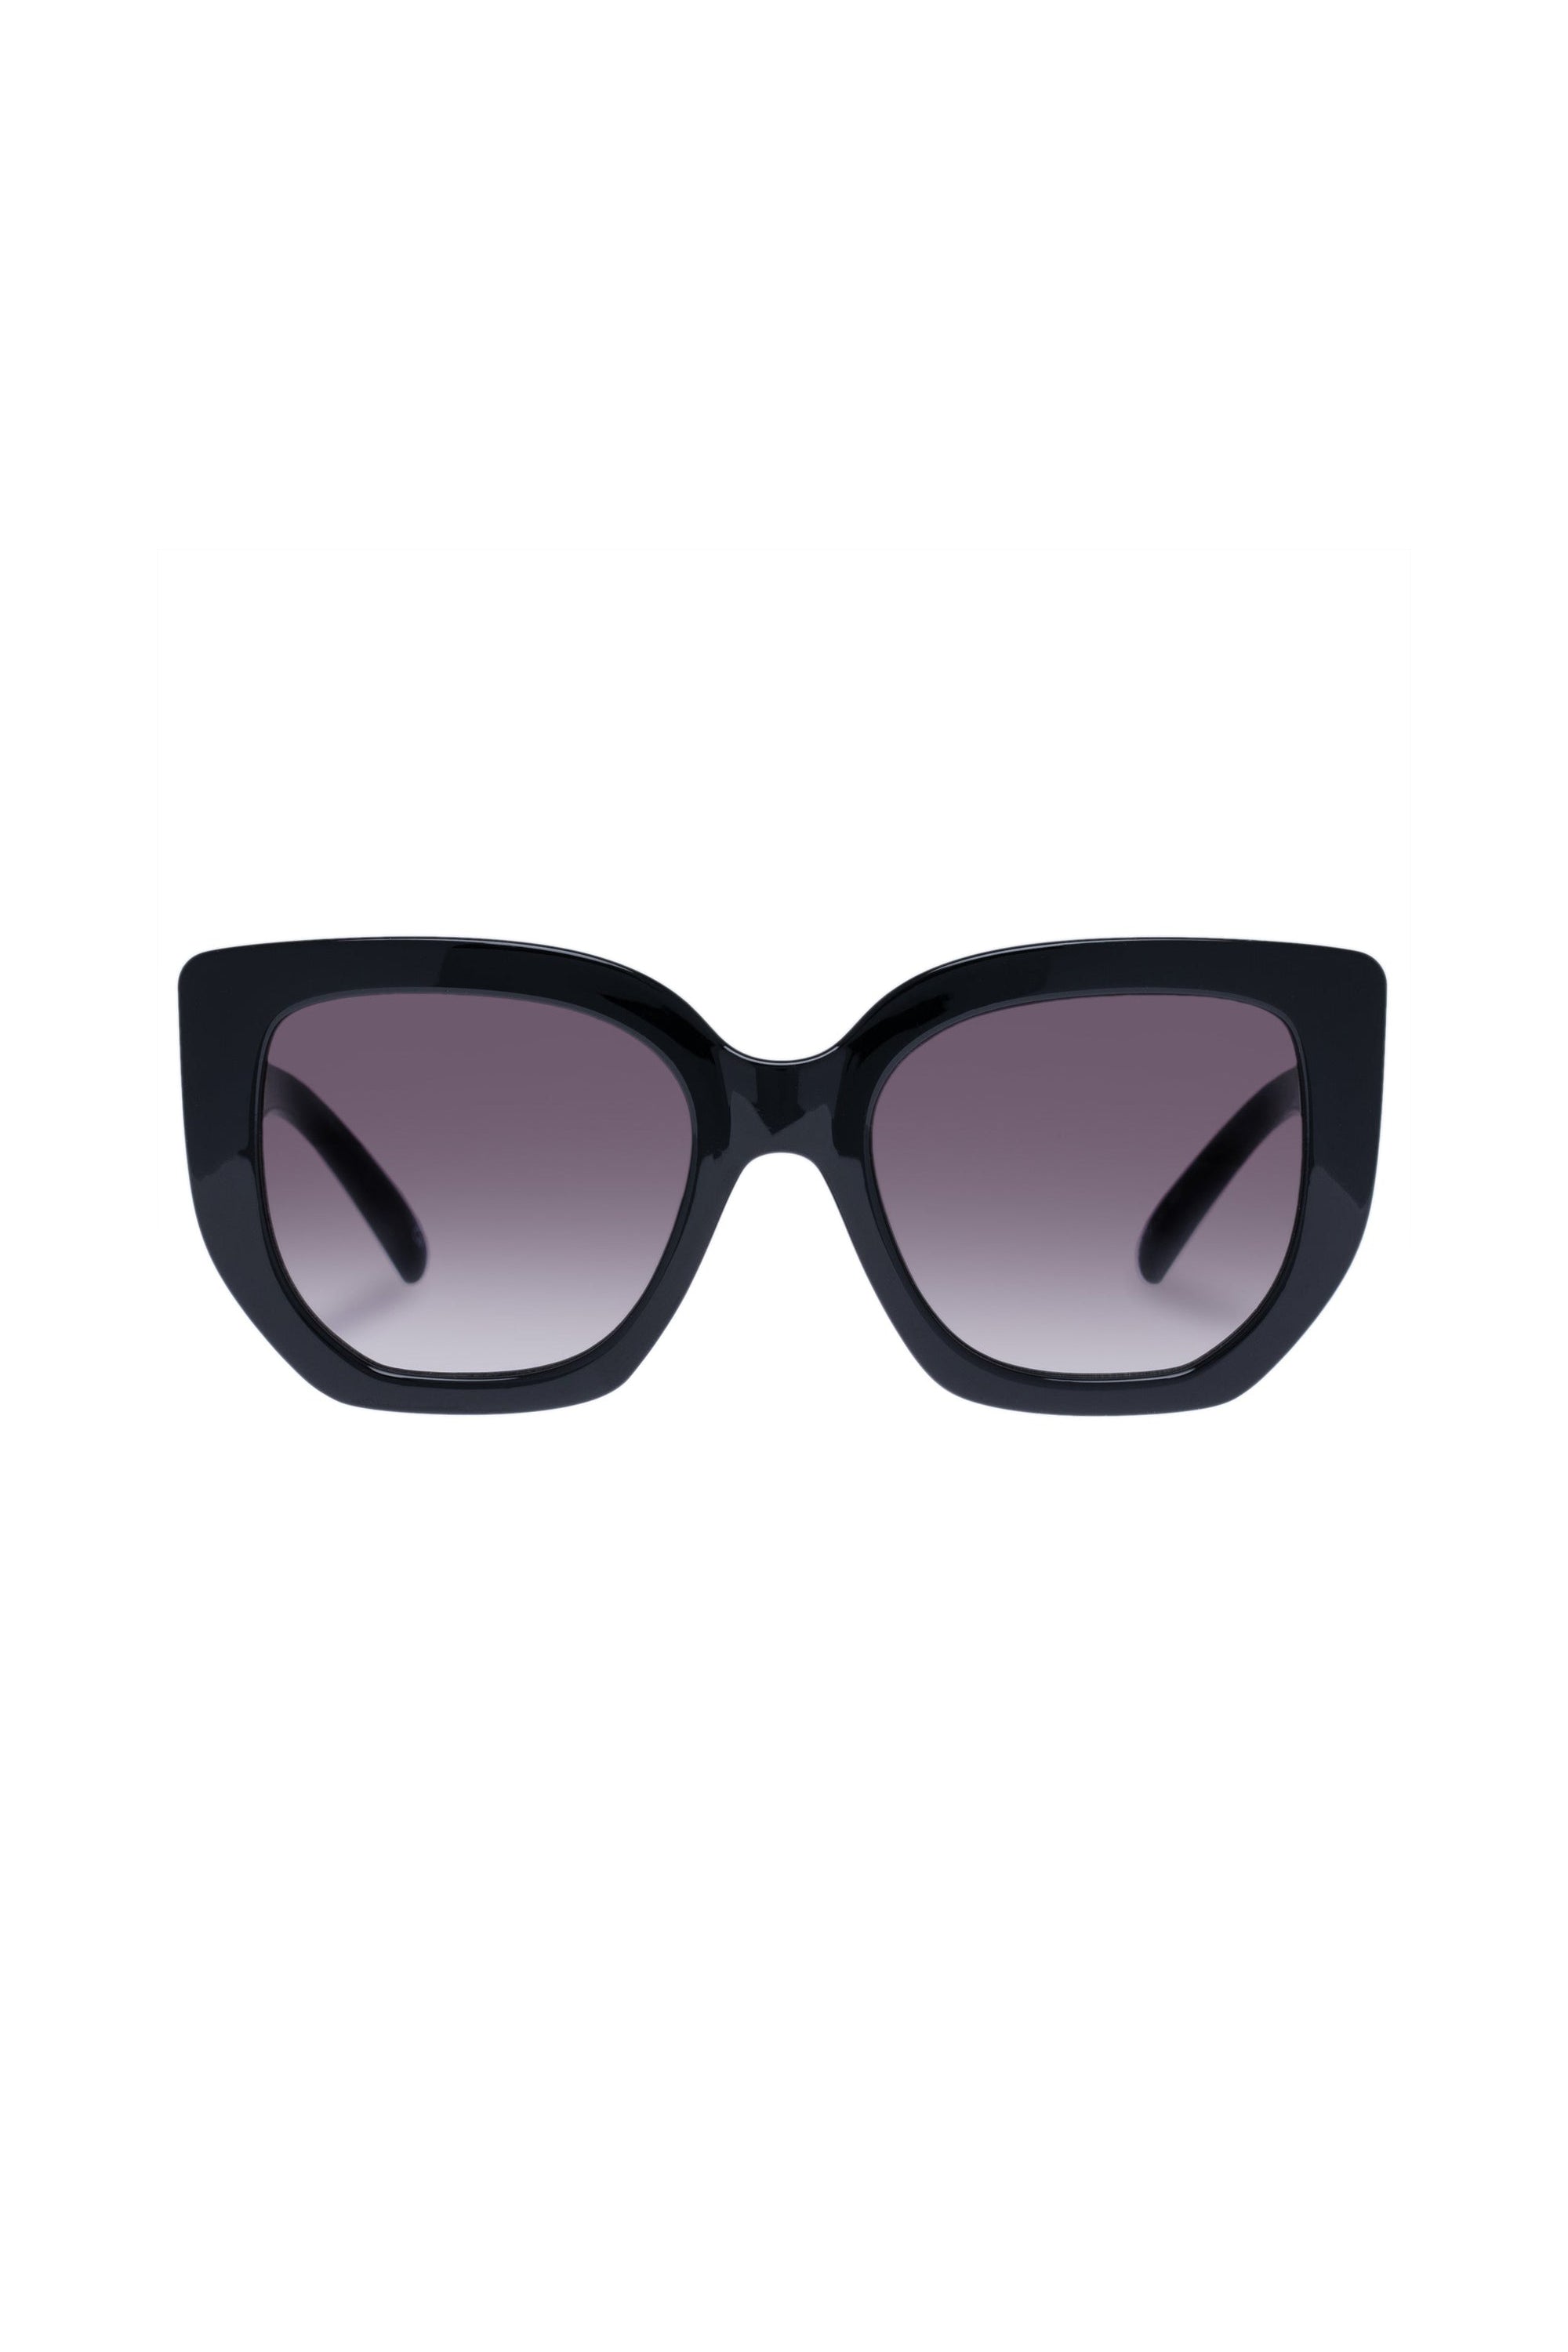 Euphoria Sunglasses - Black